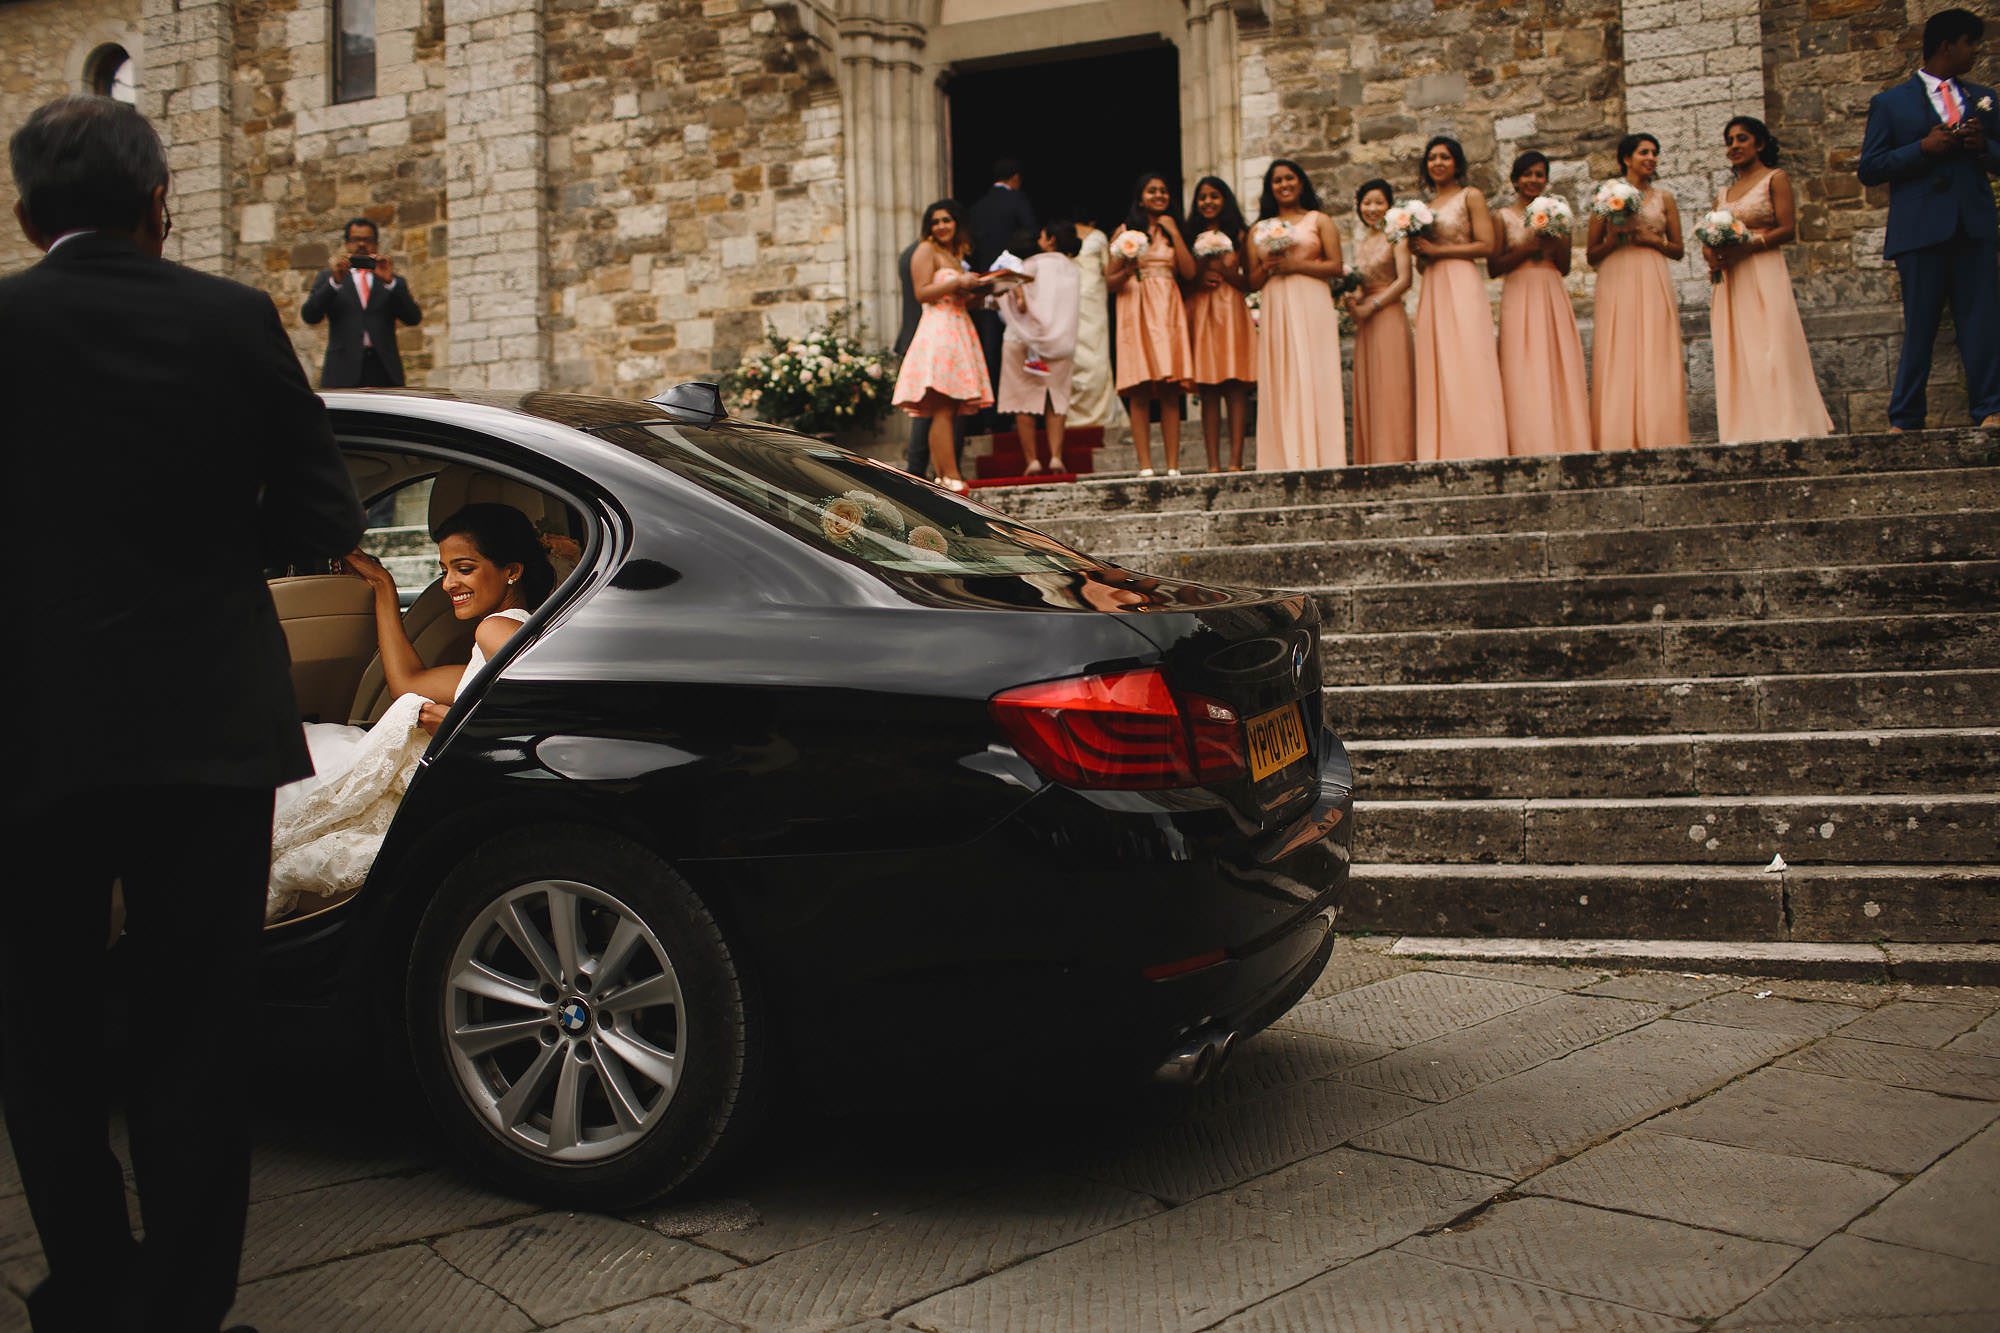 Le filigare wedding photography tuscany